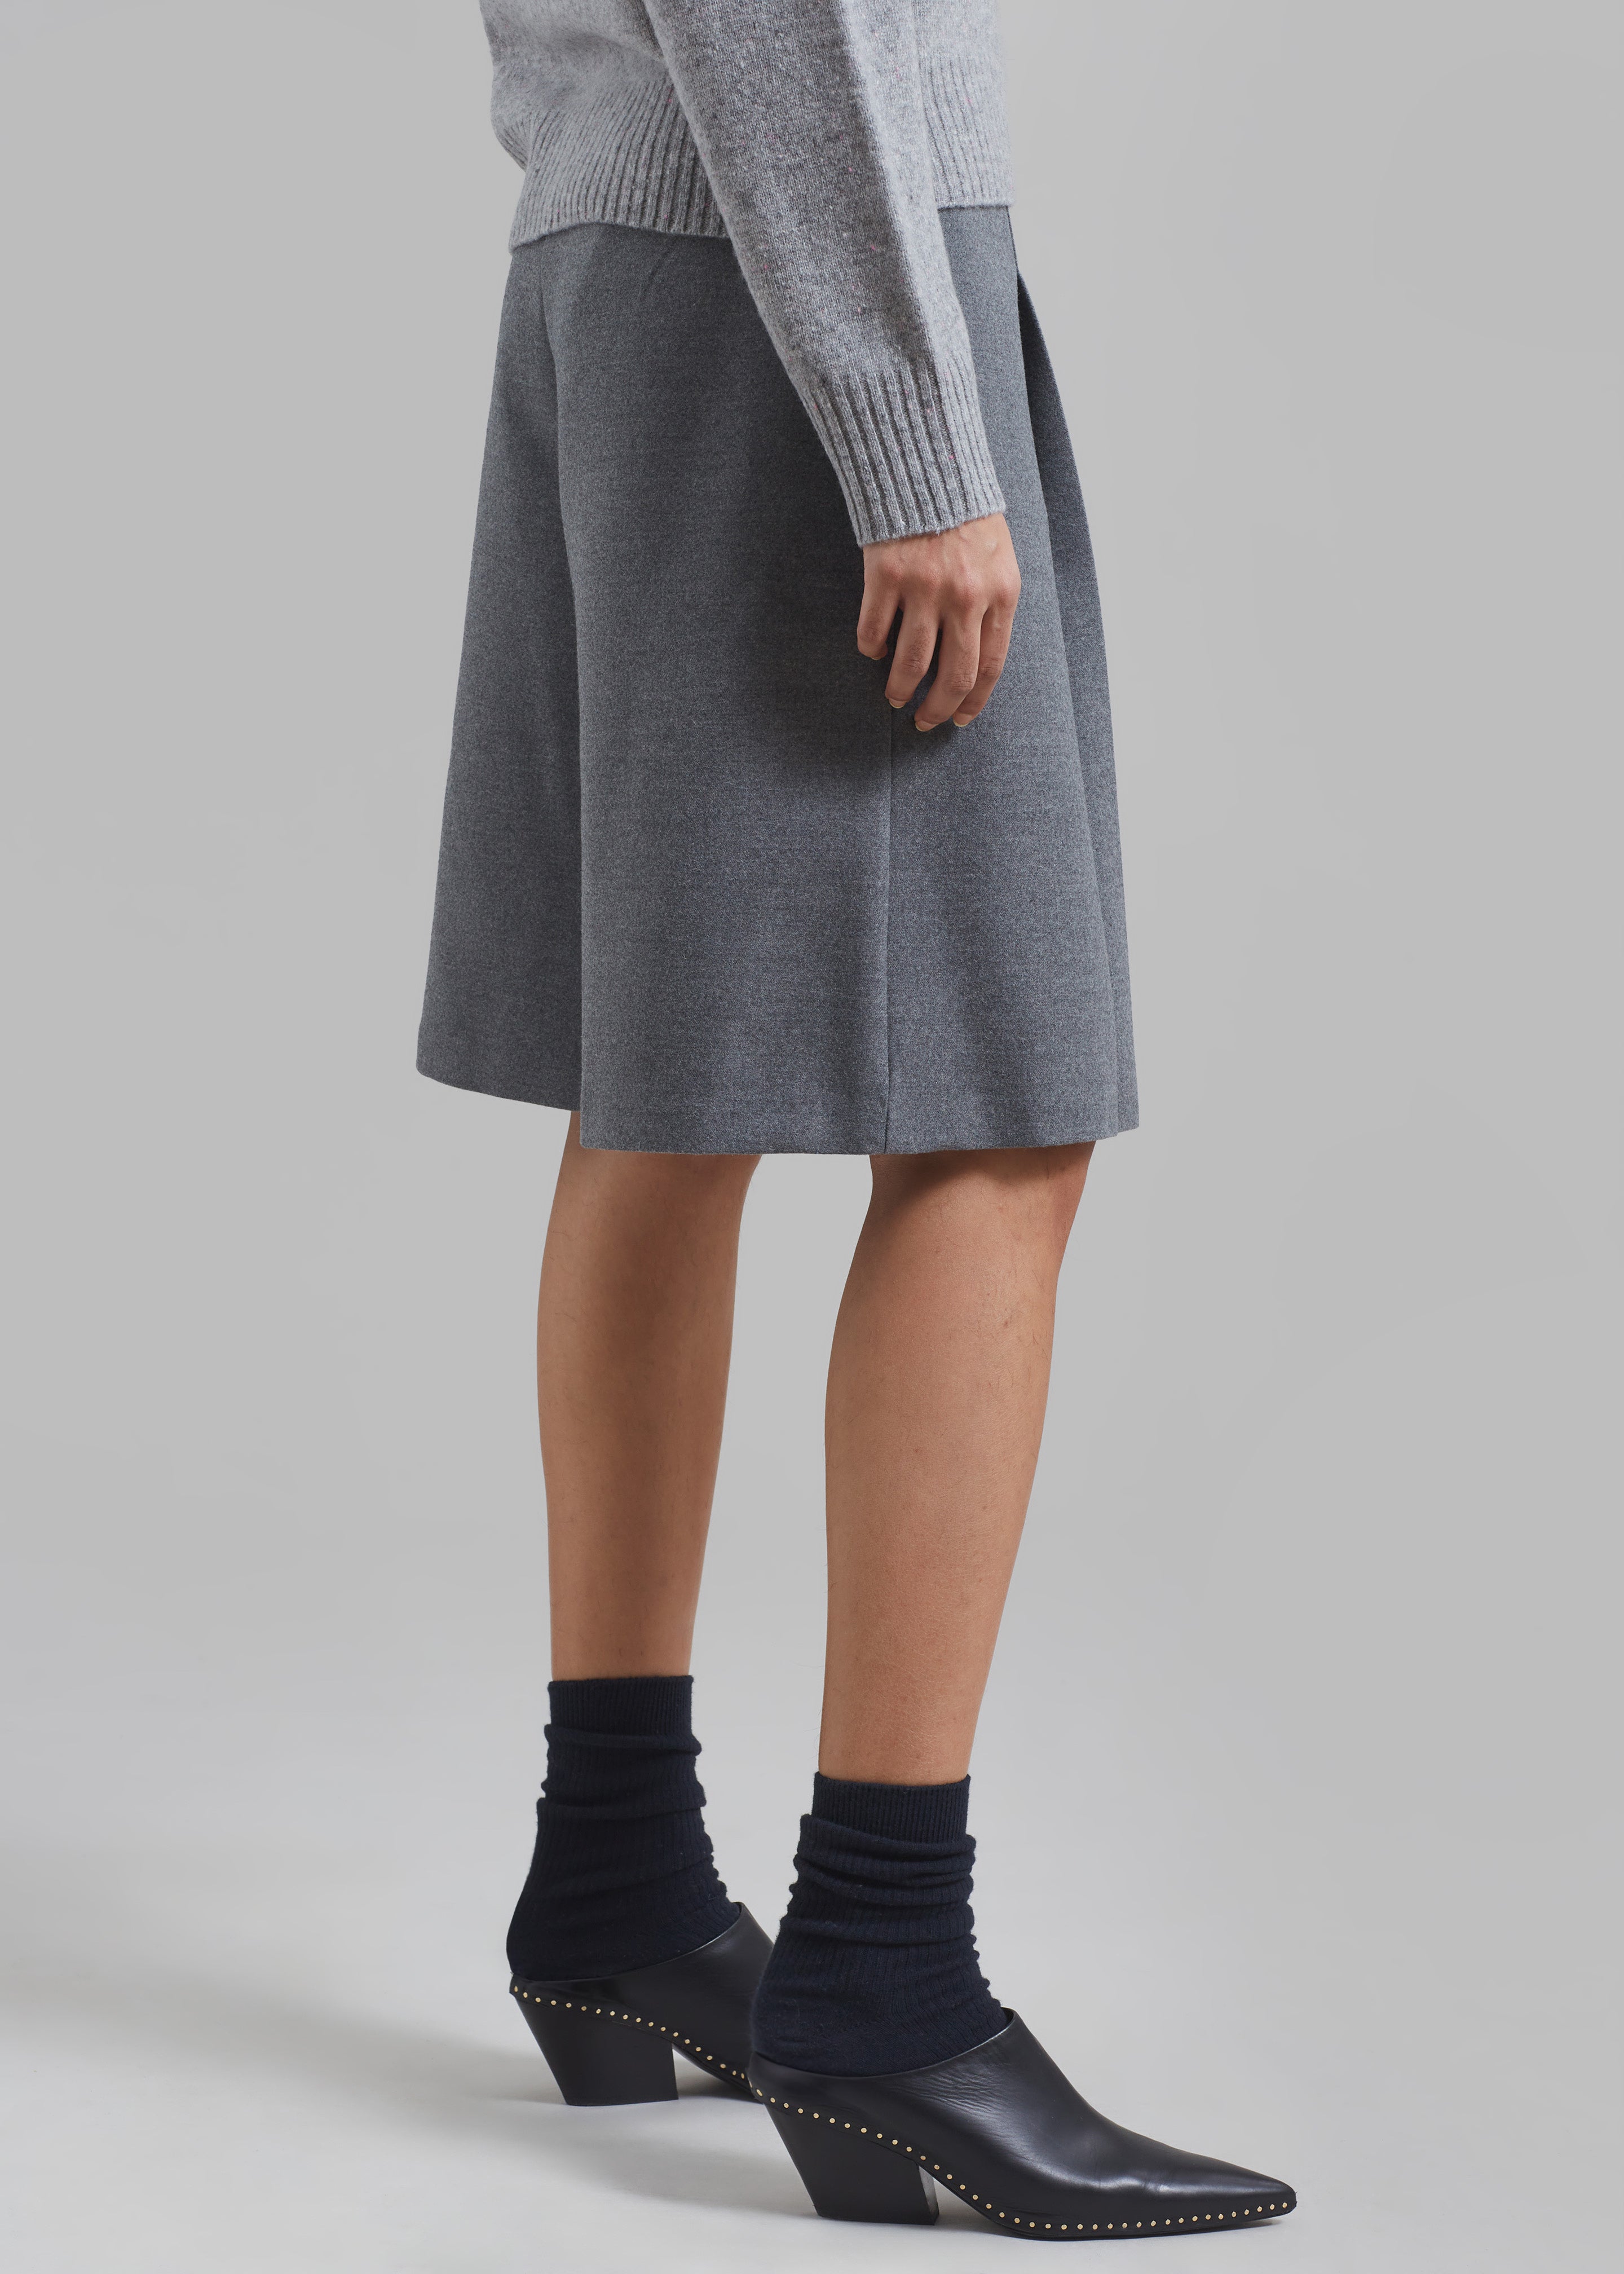 Austen Bermuda Shorts - Grey - 6